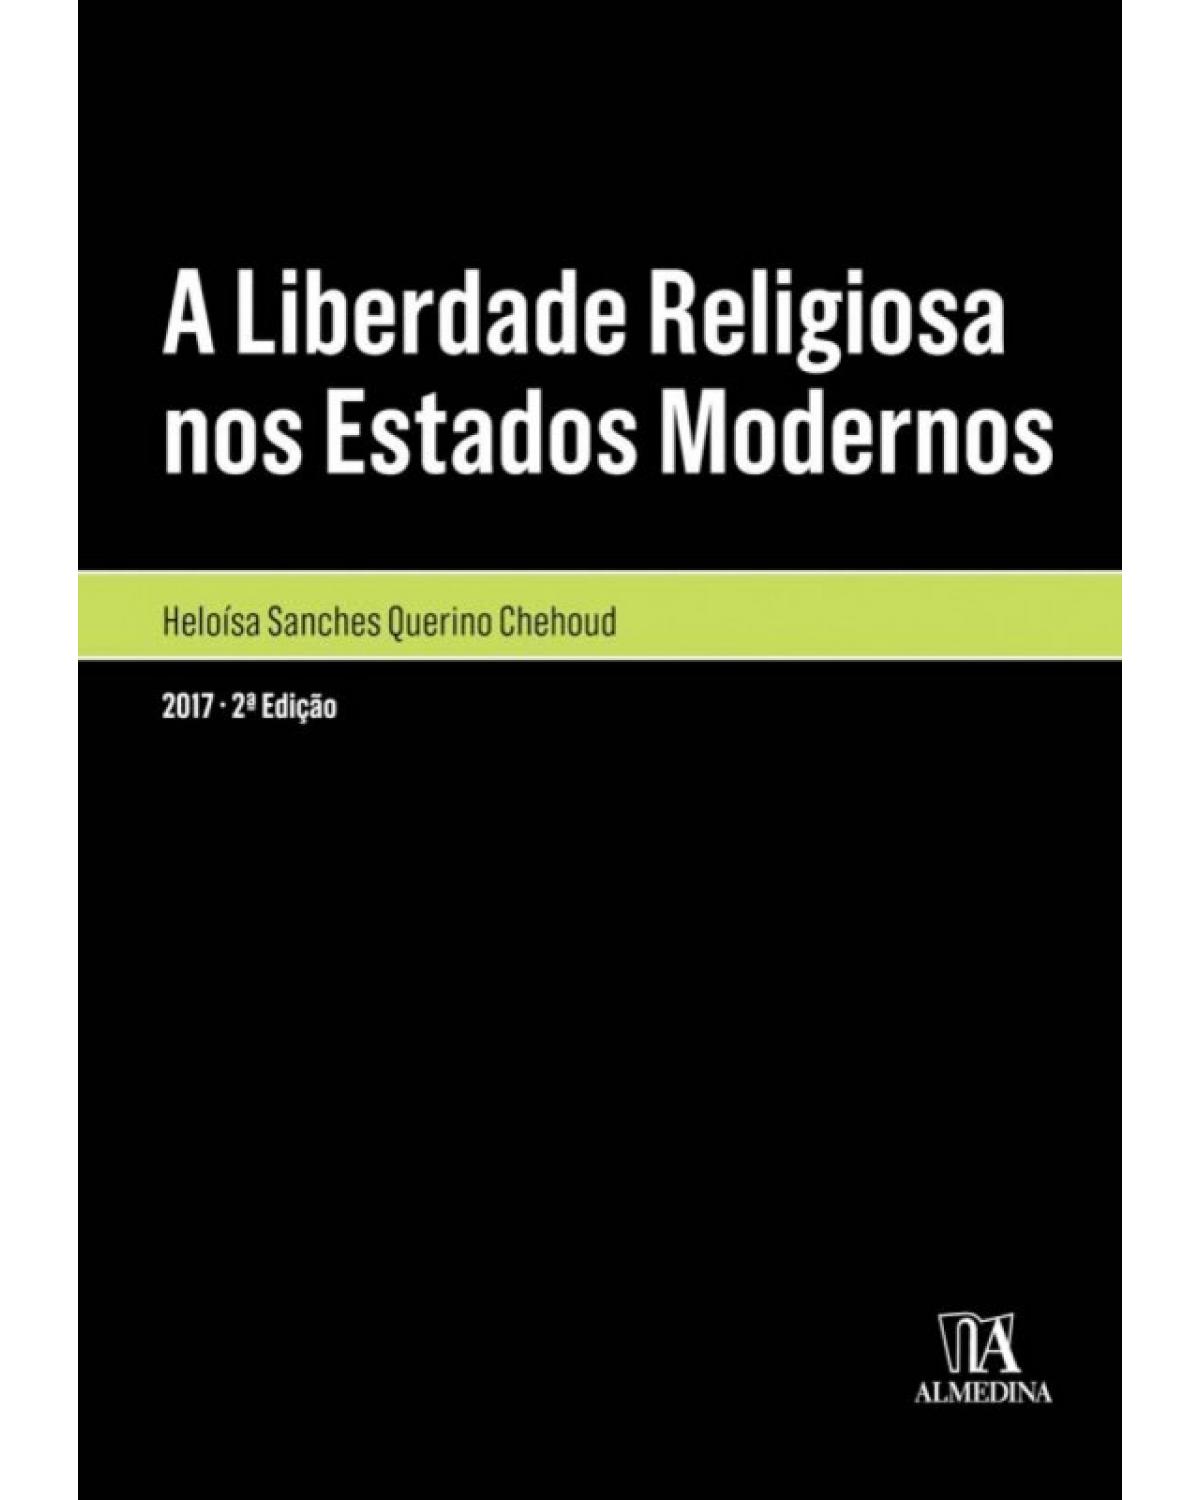 A liberdade religiosa nos estados modernos - 2ª Edição | 2017